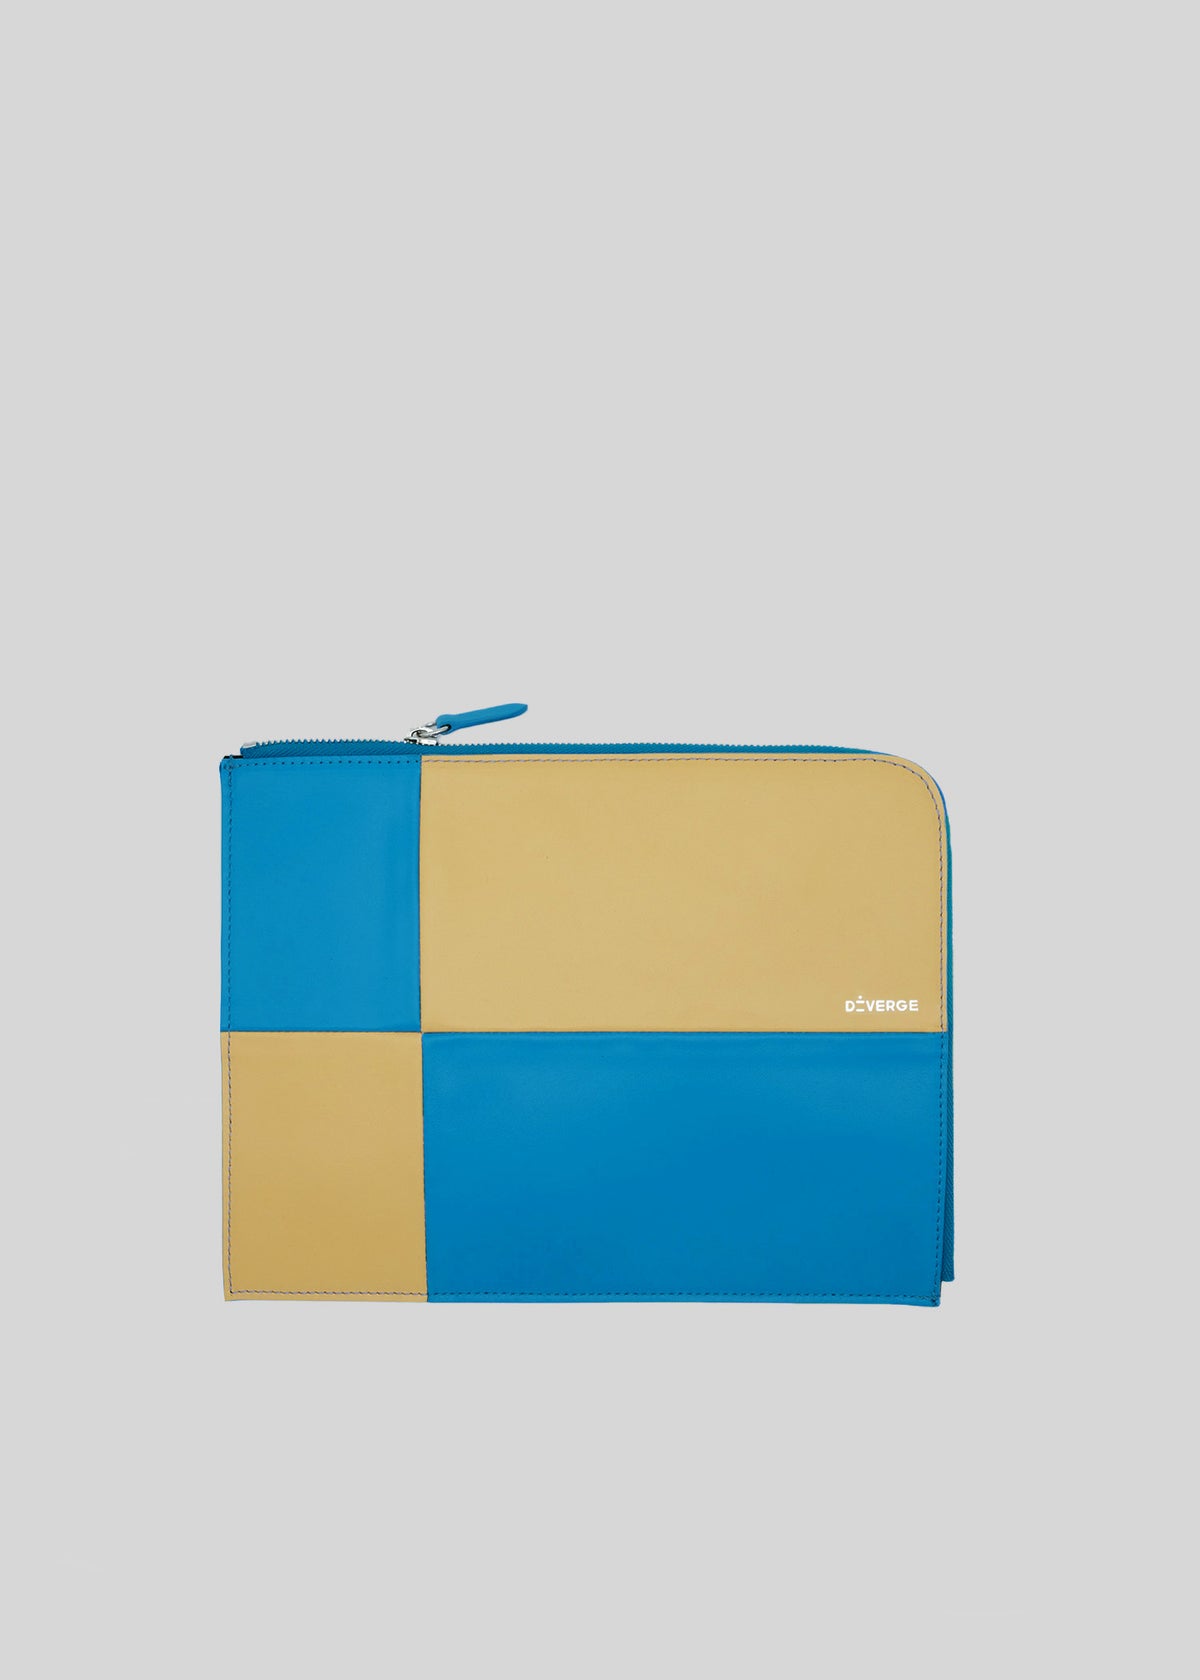 Una cartera con cremallera azul y amarilla M Patchwork Pouch Yellow & Blue con el nombre de la marca en el panel frontal inferior.